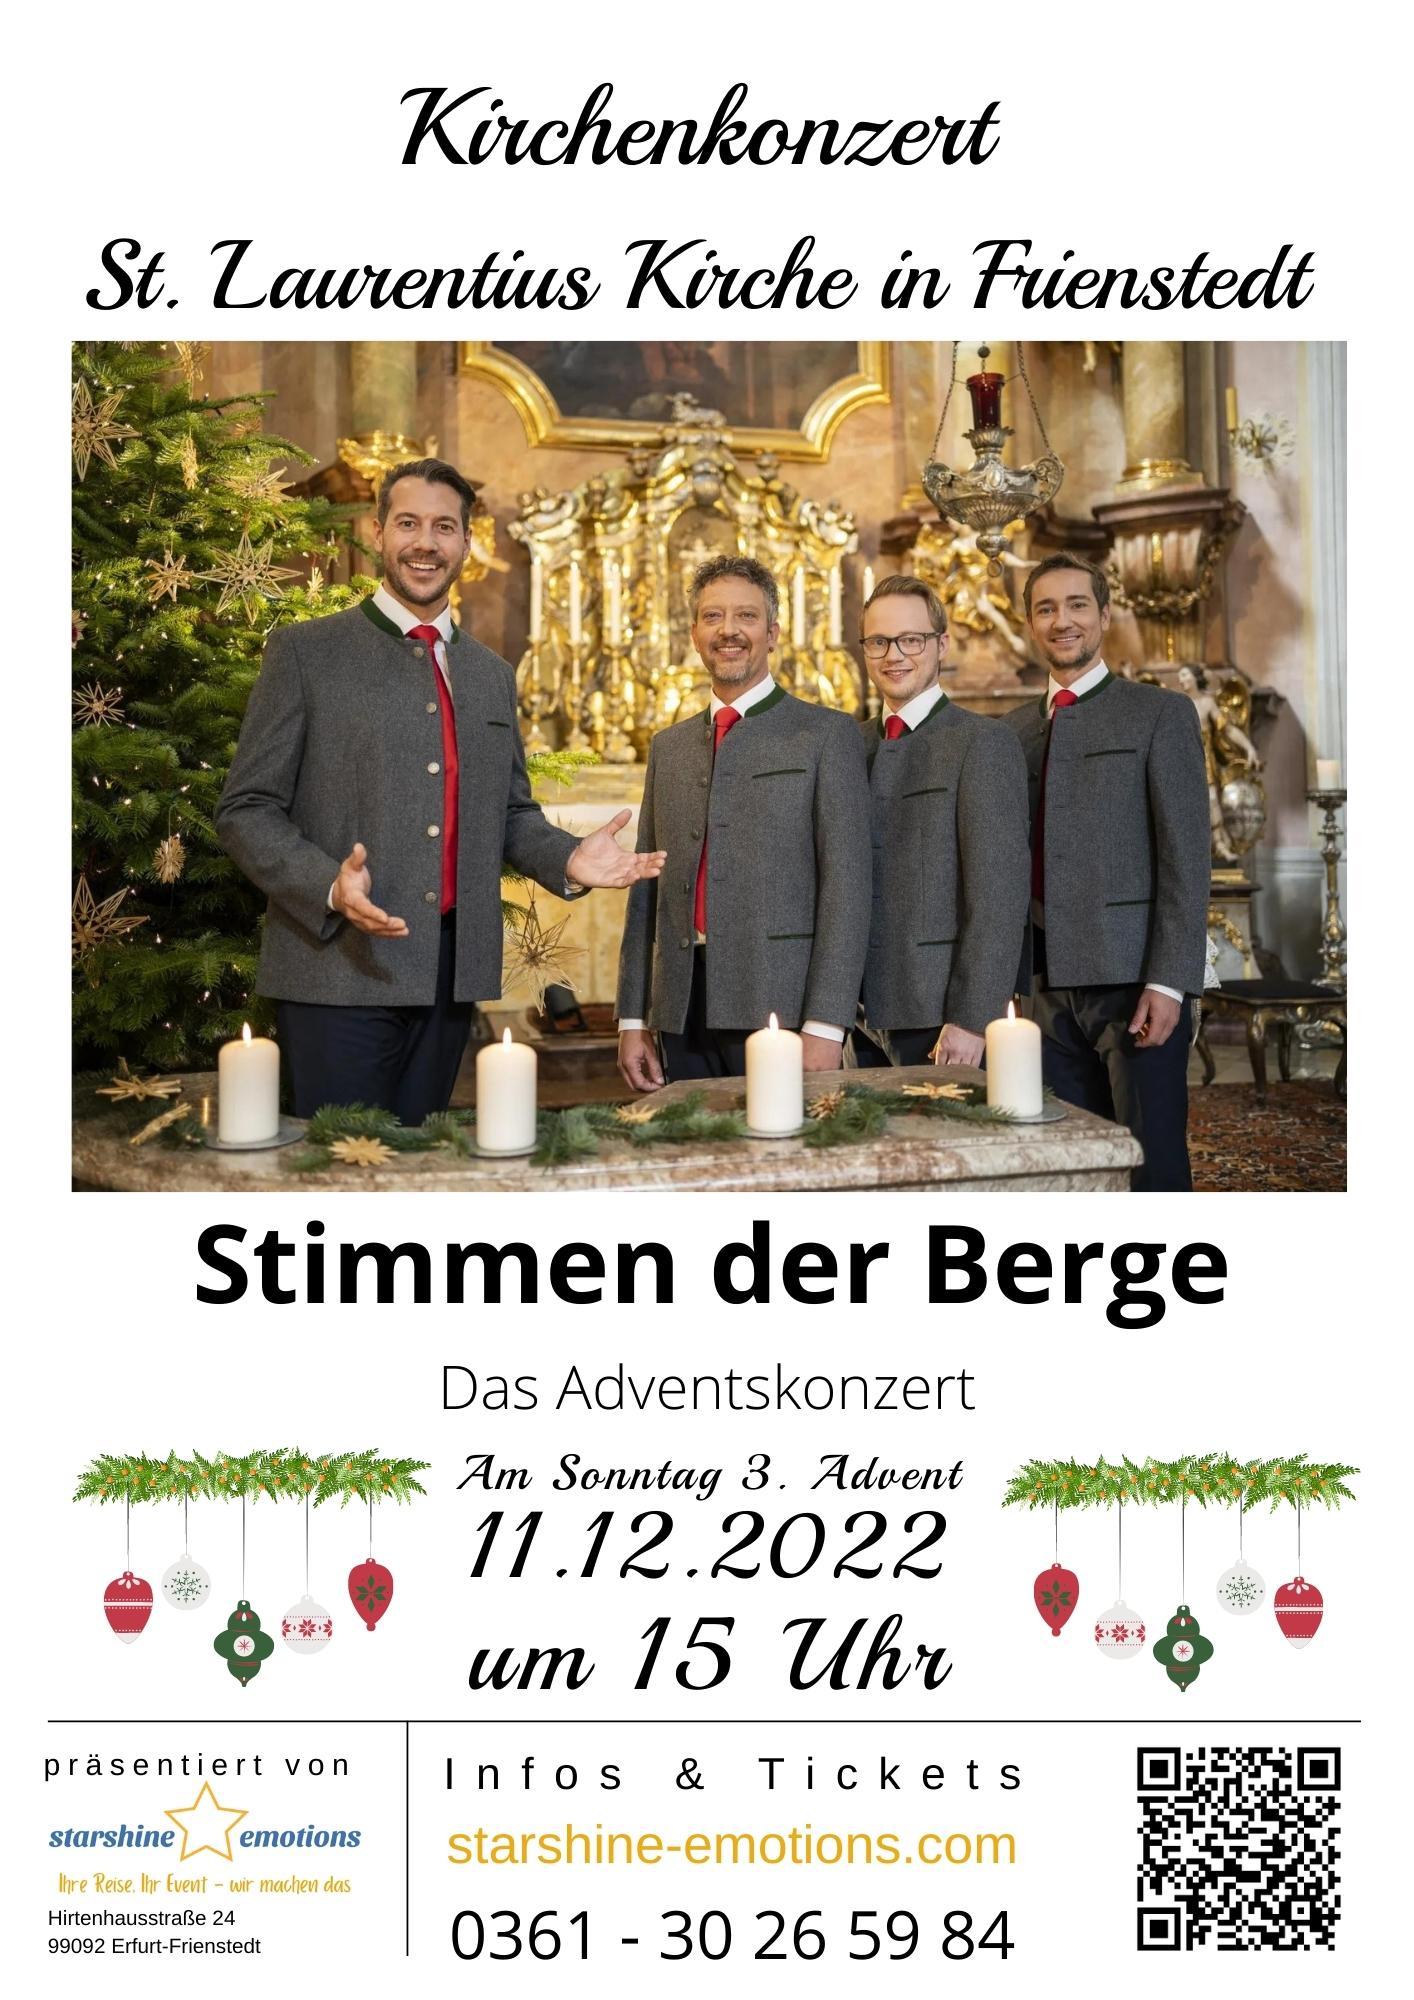 Stimmen der Berge Adventskonzert in der Kirche in Erfurt Frienstedt